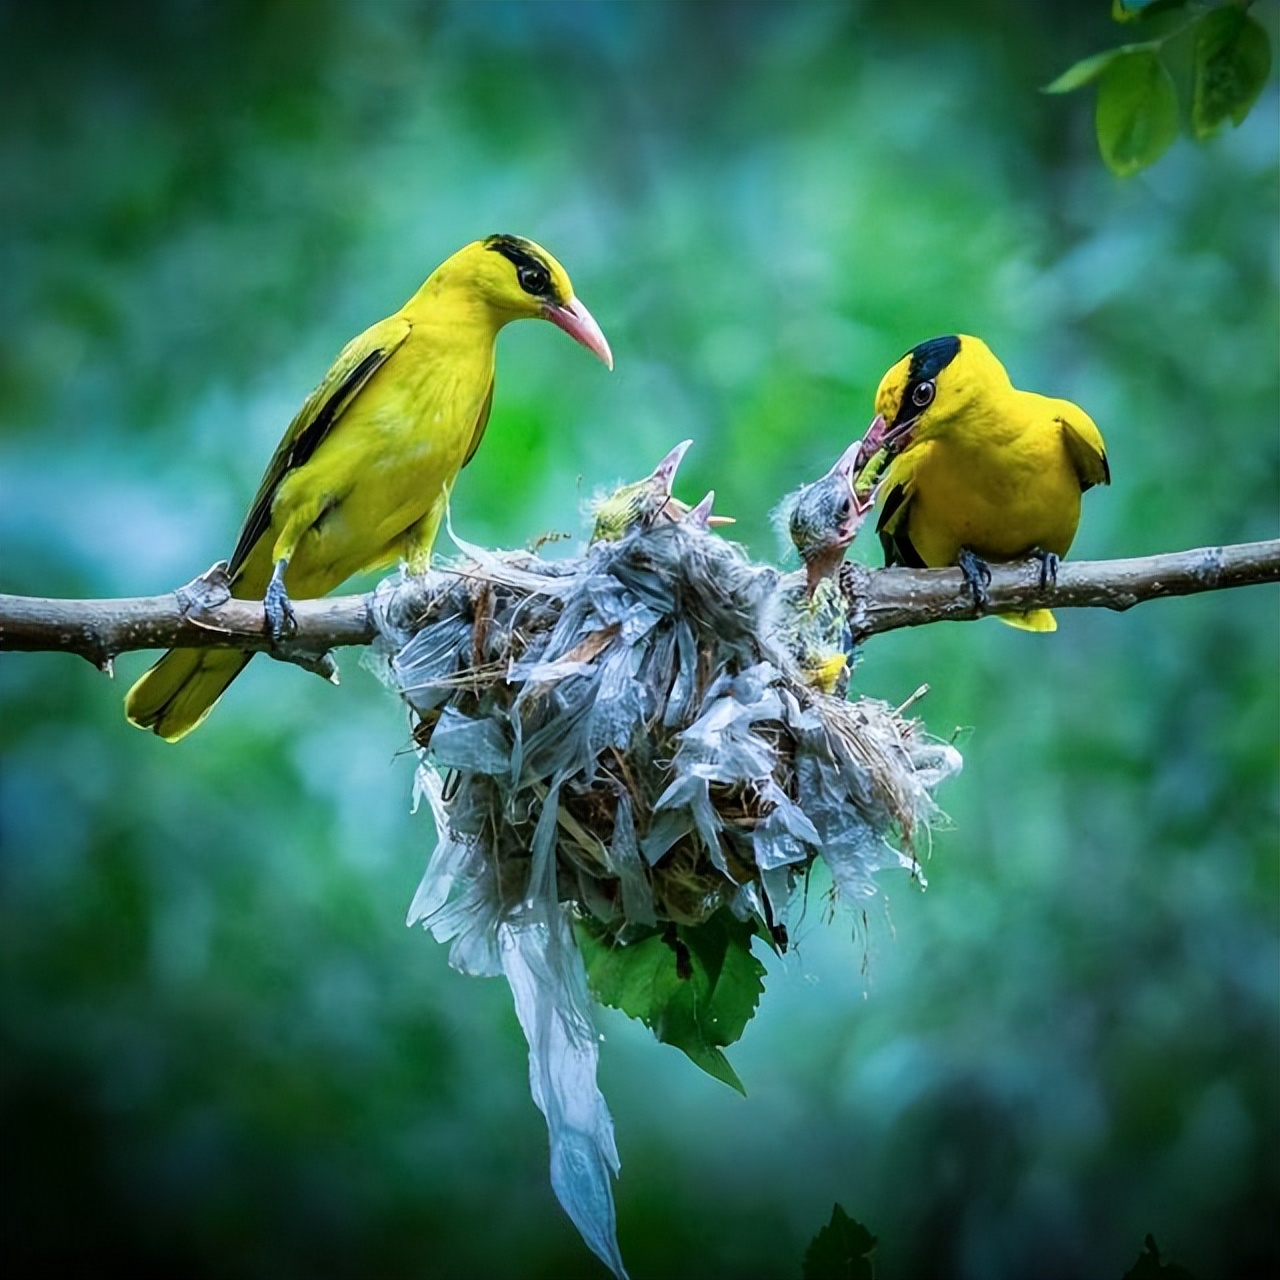 如今,野生黄鹂鸟的具体数量没有详细的统计,但根据台湾地区的统计